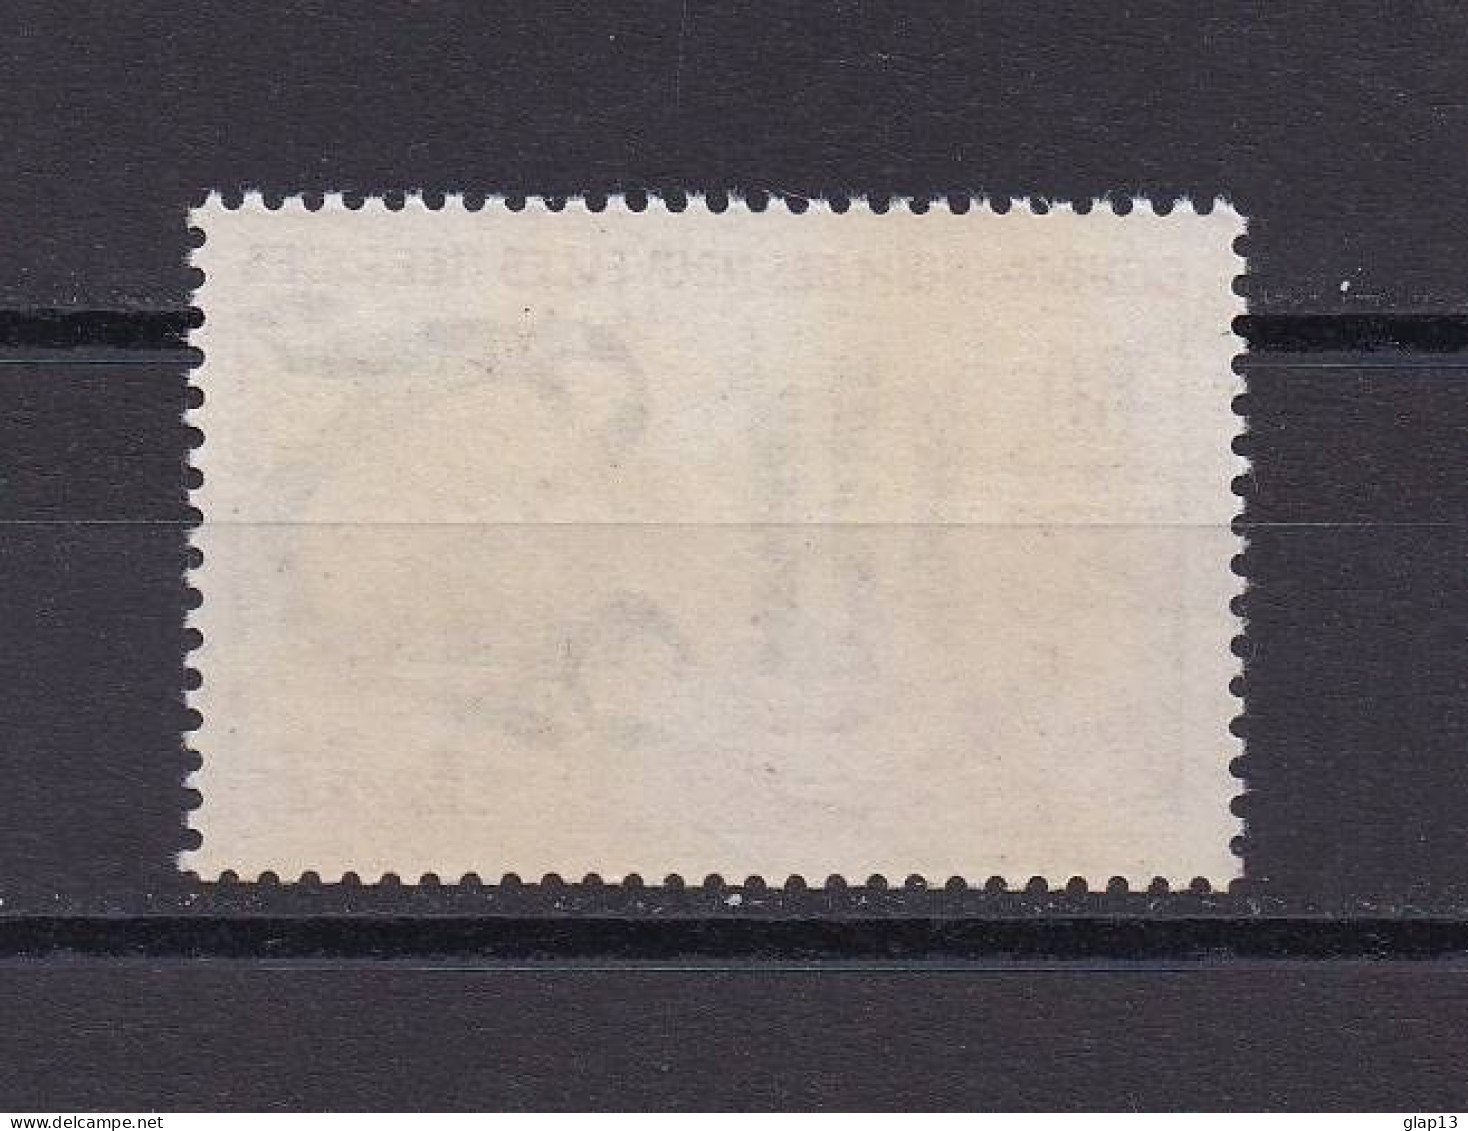 NOUVELLES-HEBRIDES 1963 TIMBRE N°197 NEUF** CAMPAGNE MONDIALE CONTRE LA FAIM - Unused Stamps